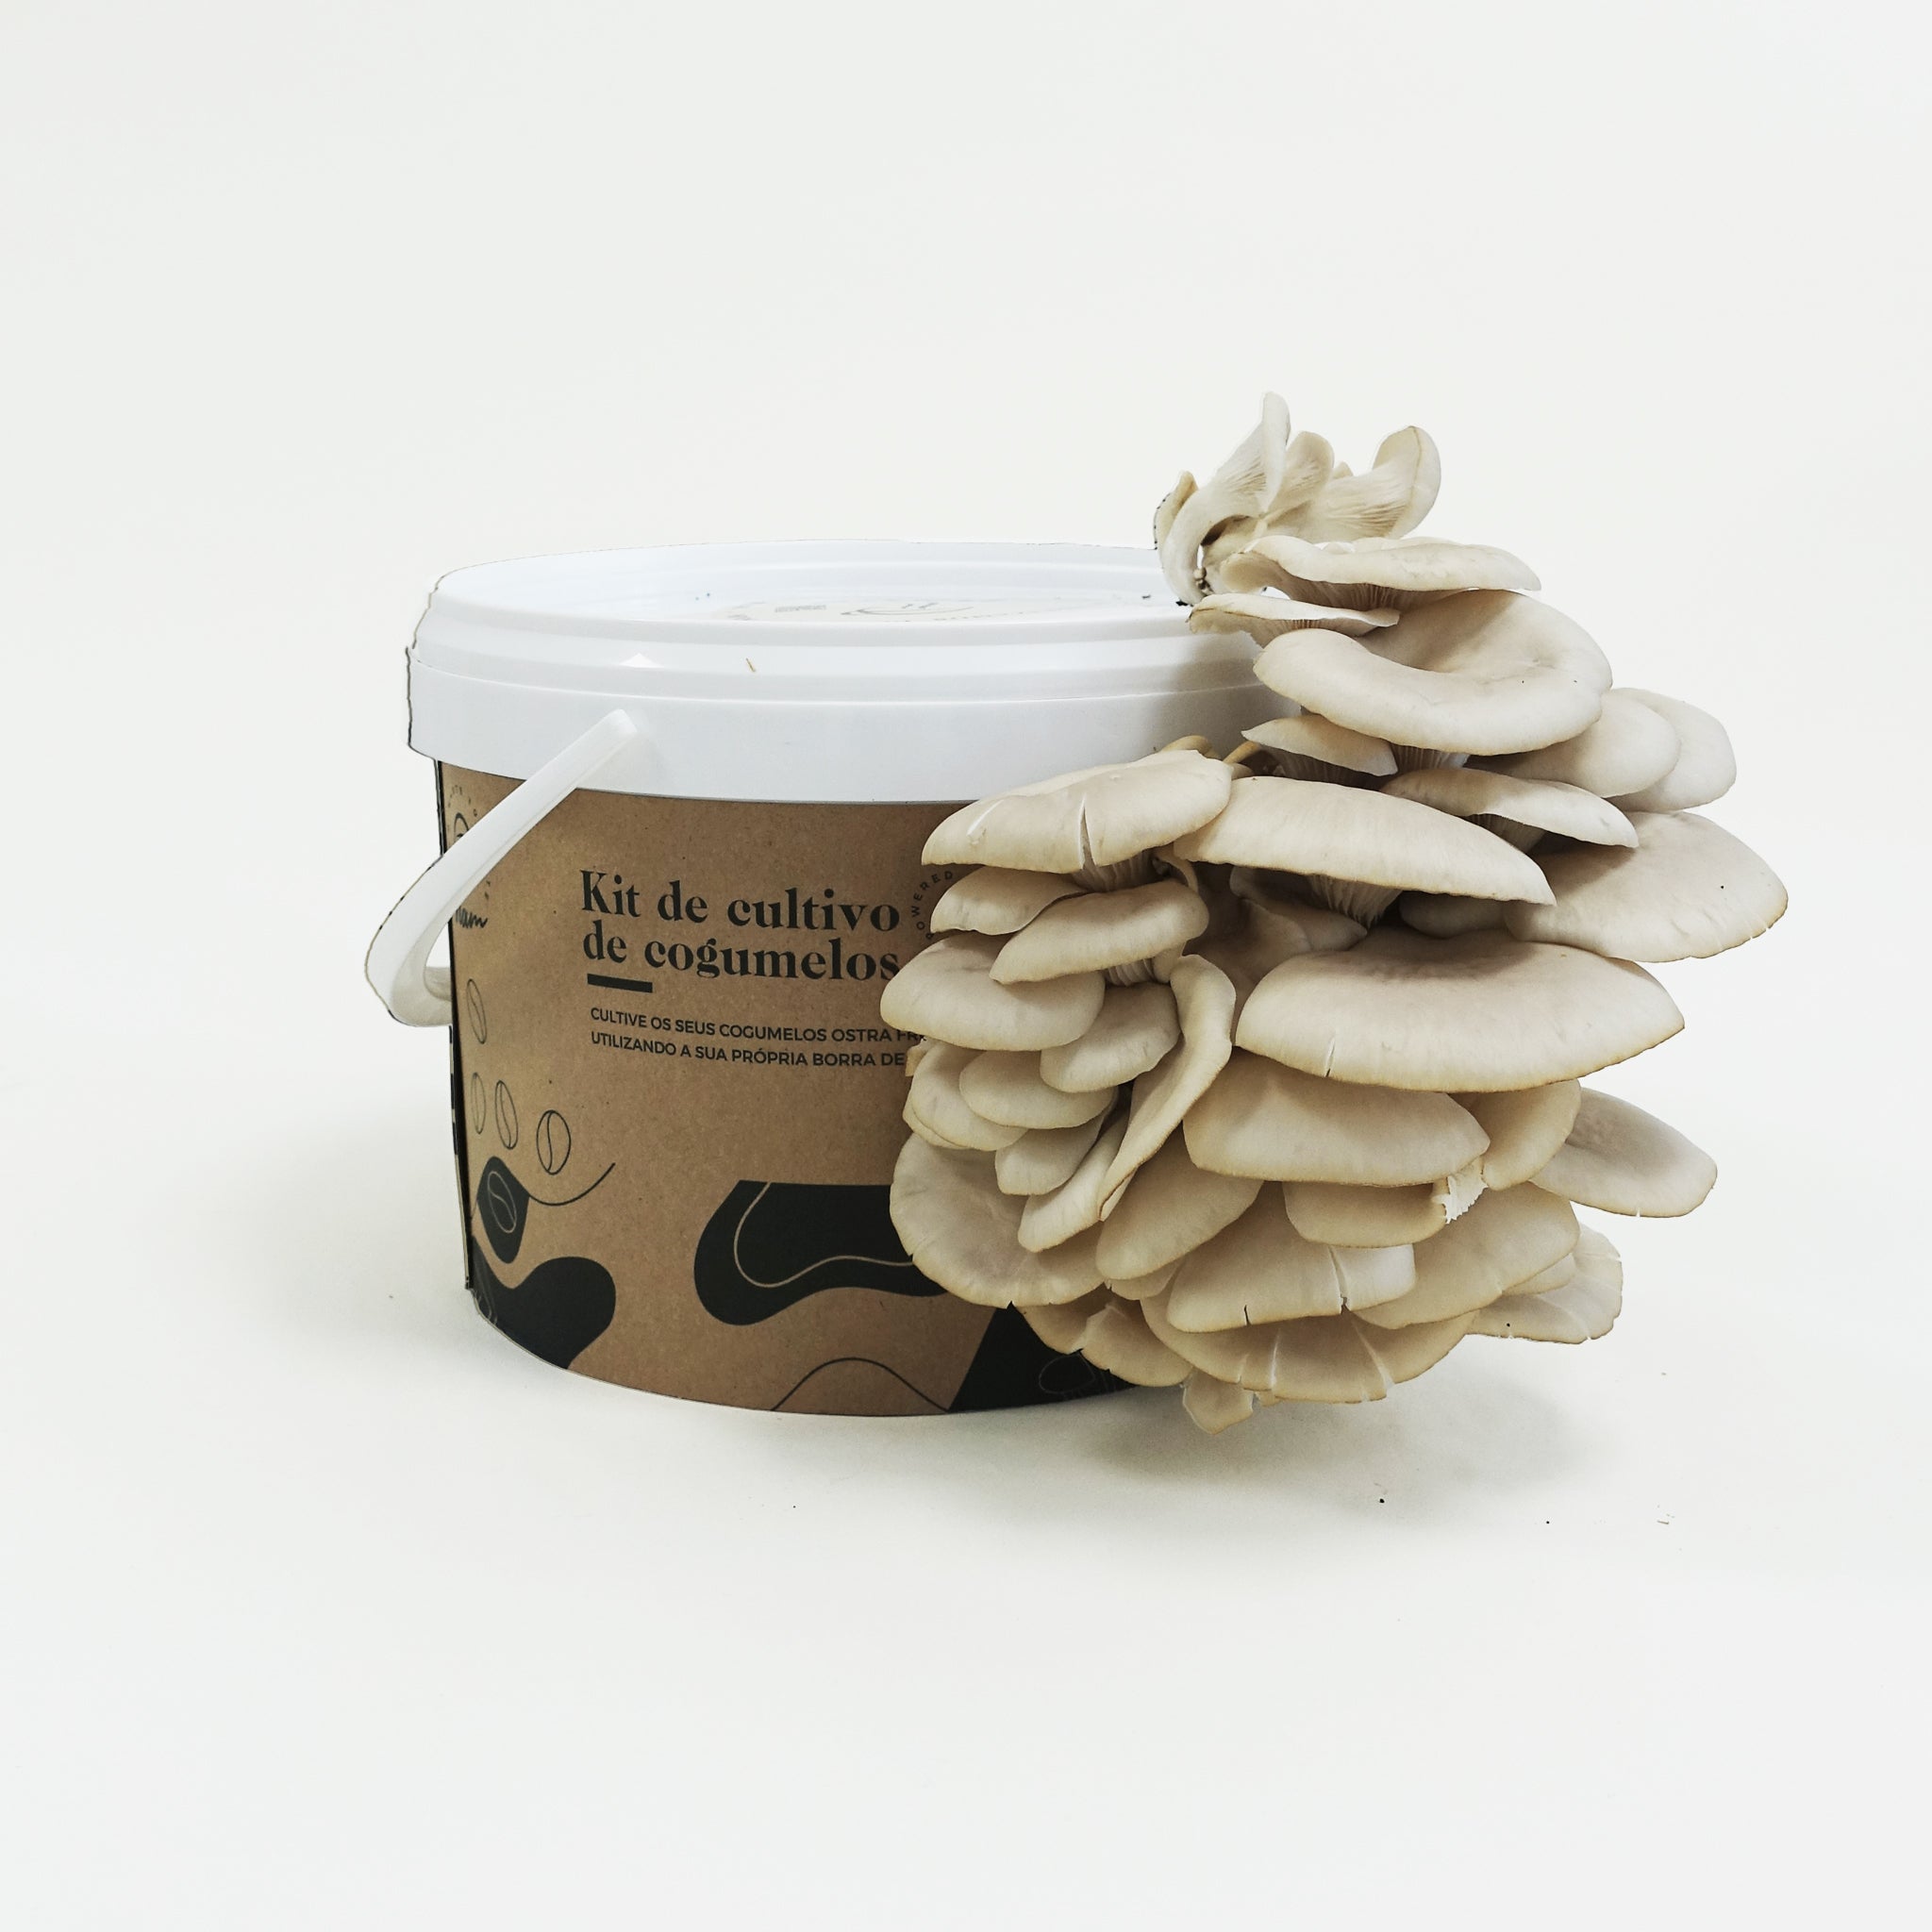 DIY Kit - Pleurotus Mushroom